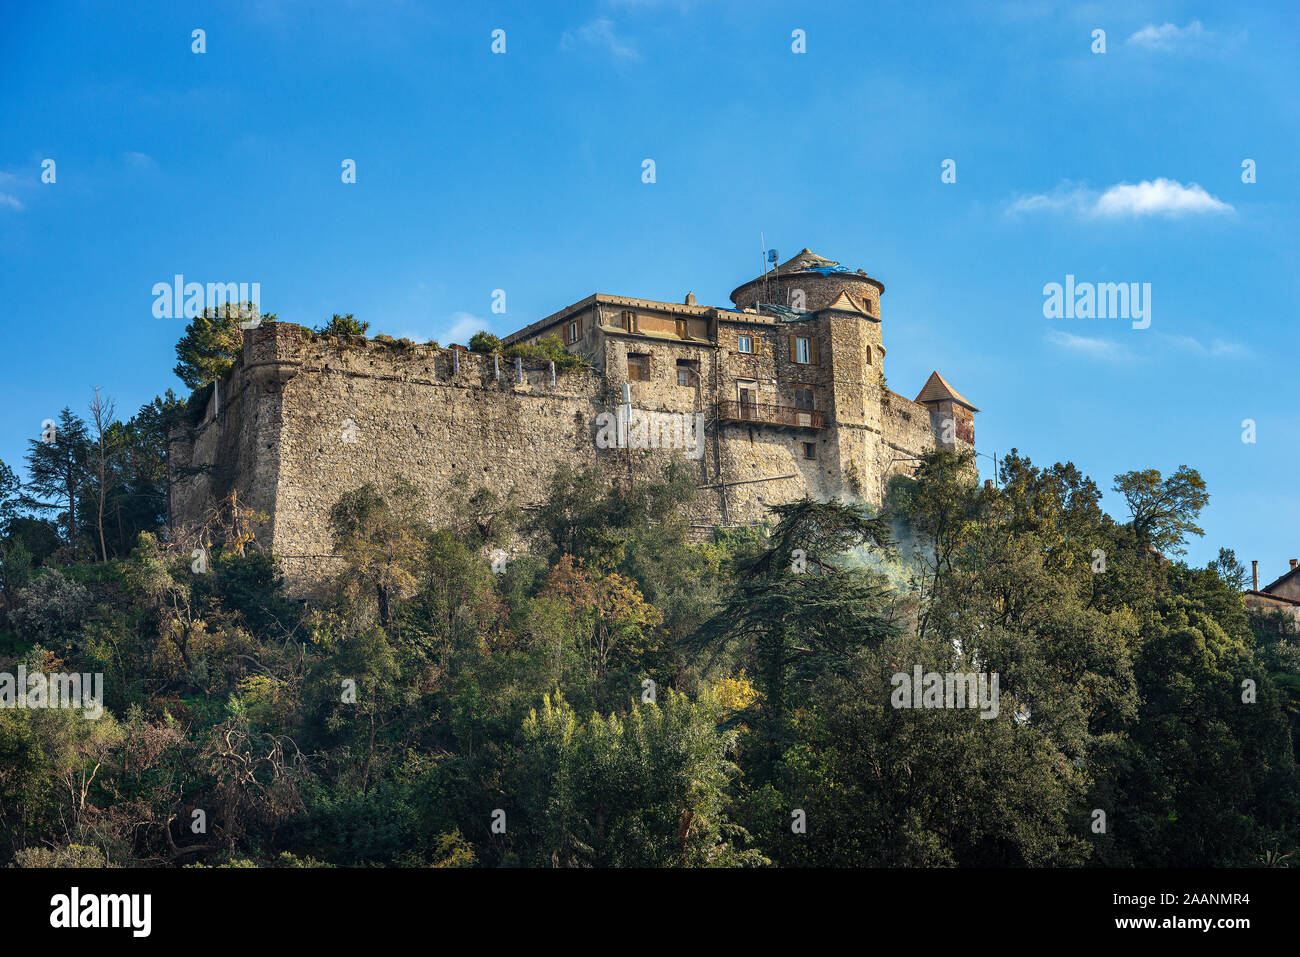 Château médiéval brun ou de St George (San Giorgio), dans le célèbre village de Portofino, province de Gênes, Ligurie, Italie, Europe Banque D'Images